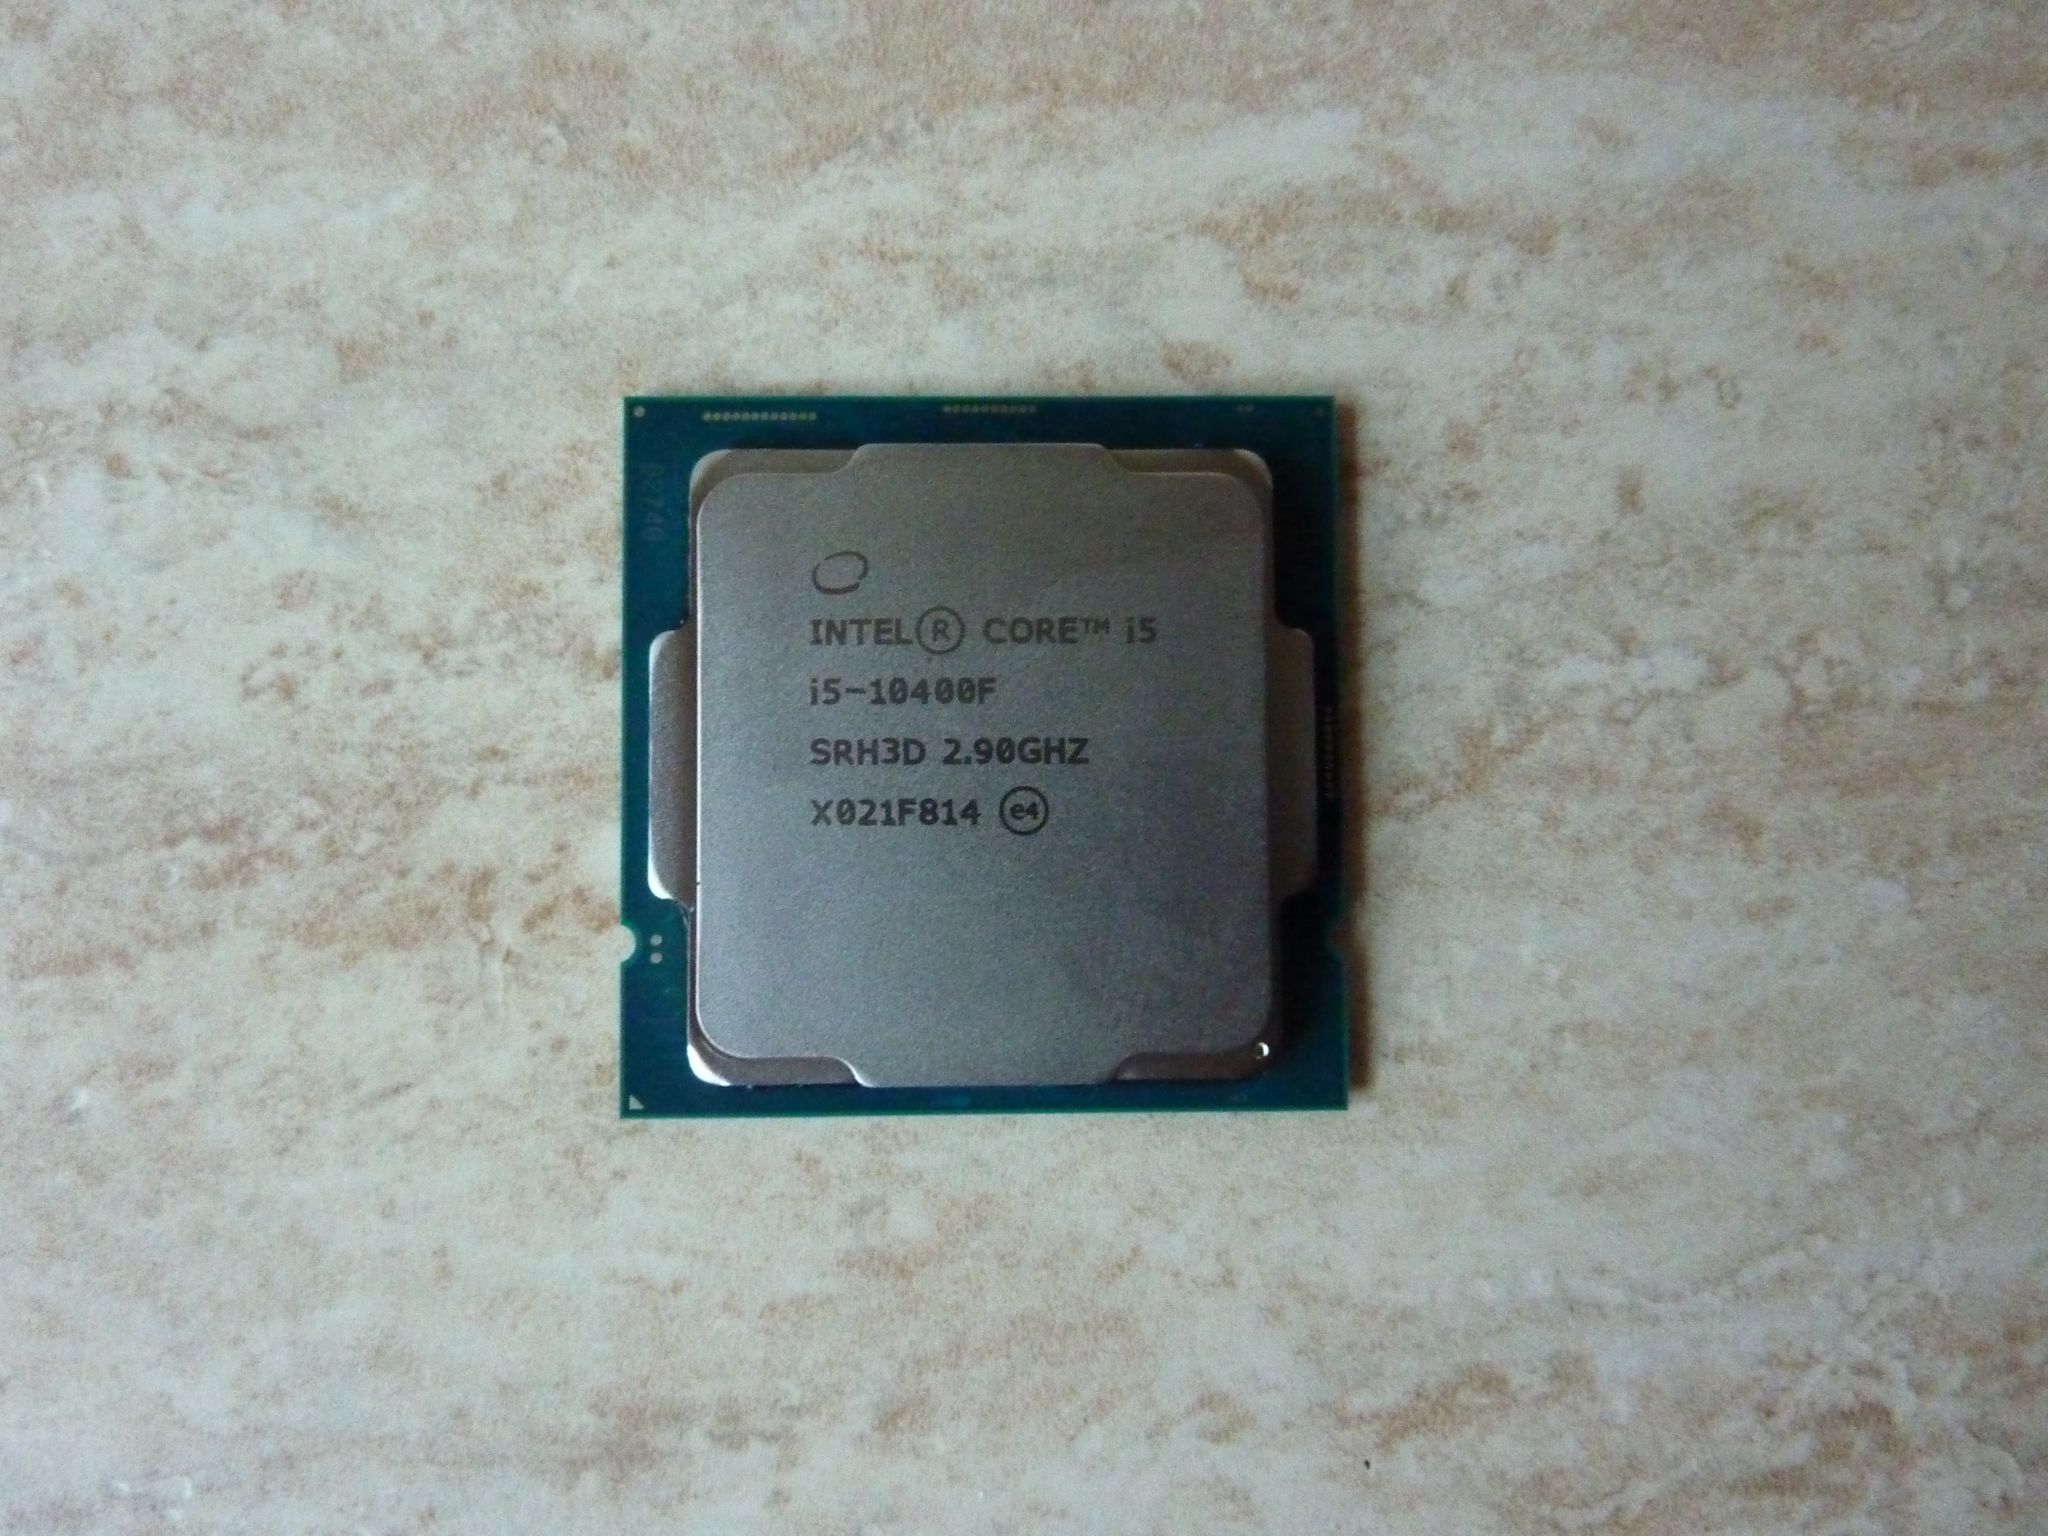 Интел коре 12400. I5 10400f. Процессор Intel Core i5-10400f lga1200, 6 x 2900 МГЦ, OEM. Процессор Intel Core i5-10400f. Процессор Intel Core i5-10400f OEM.